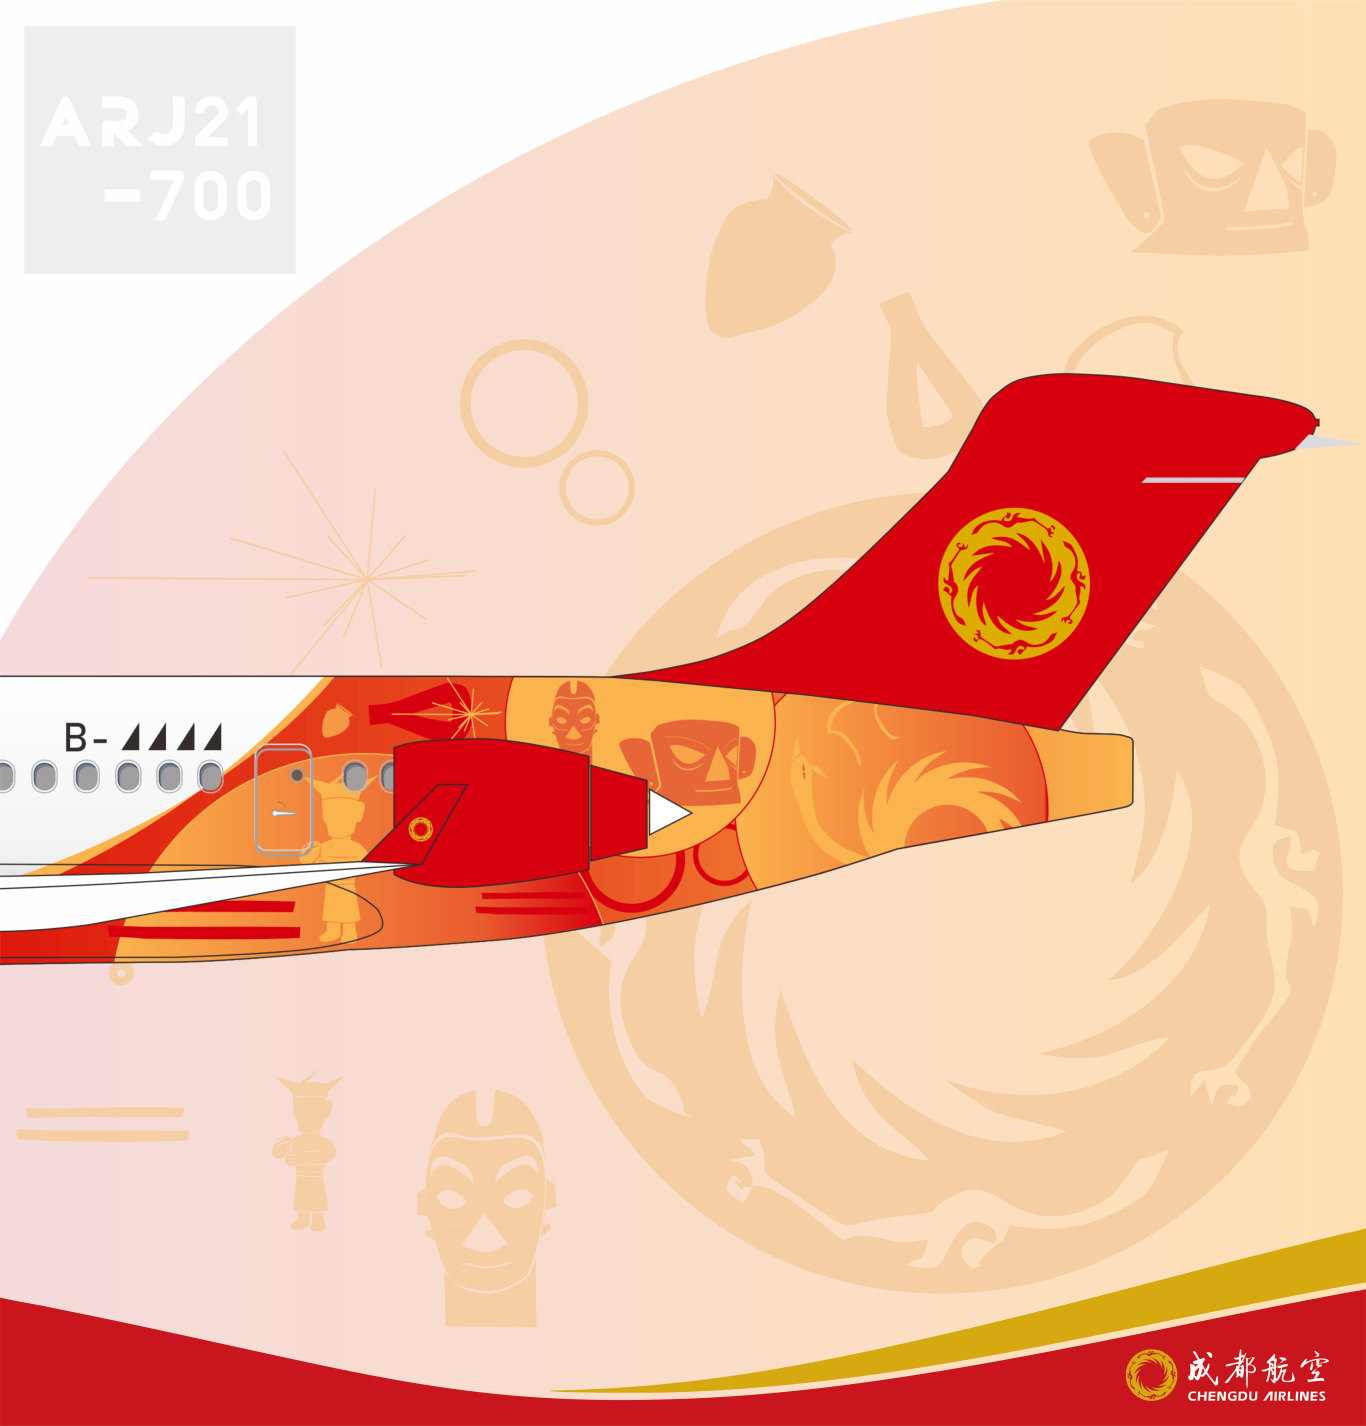 成都航空金沙号飞机涂装设计图2